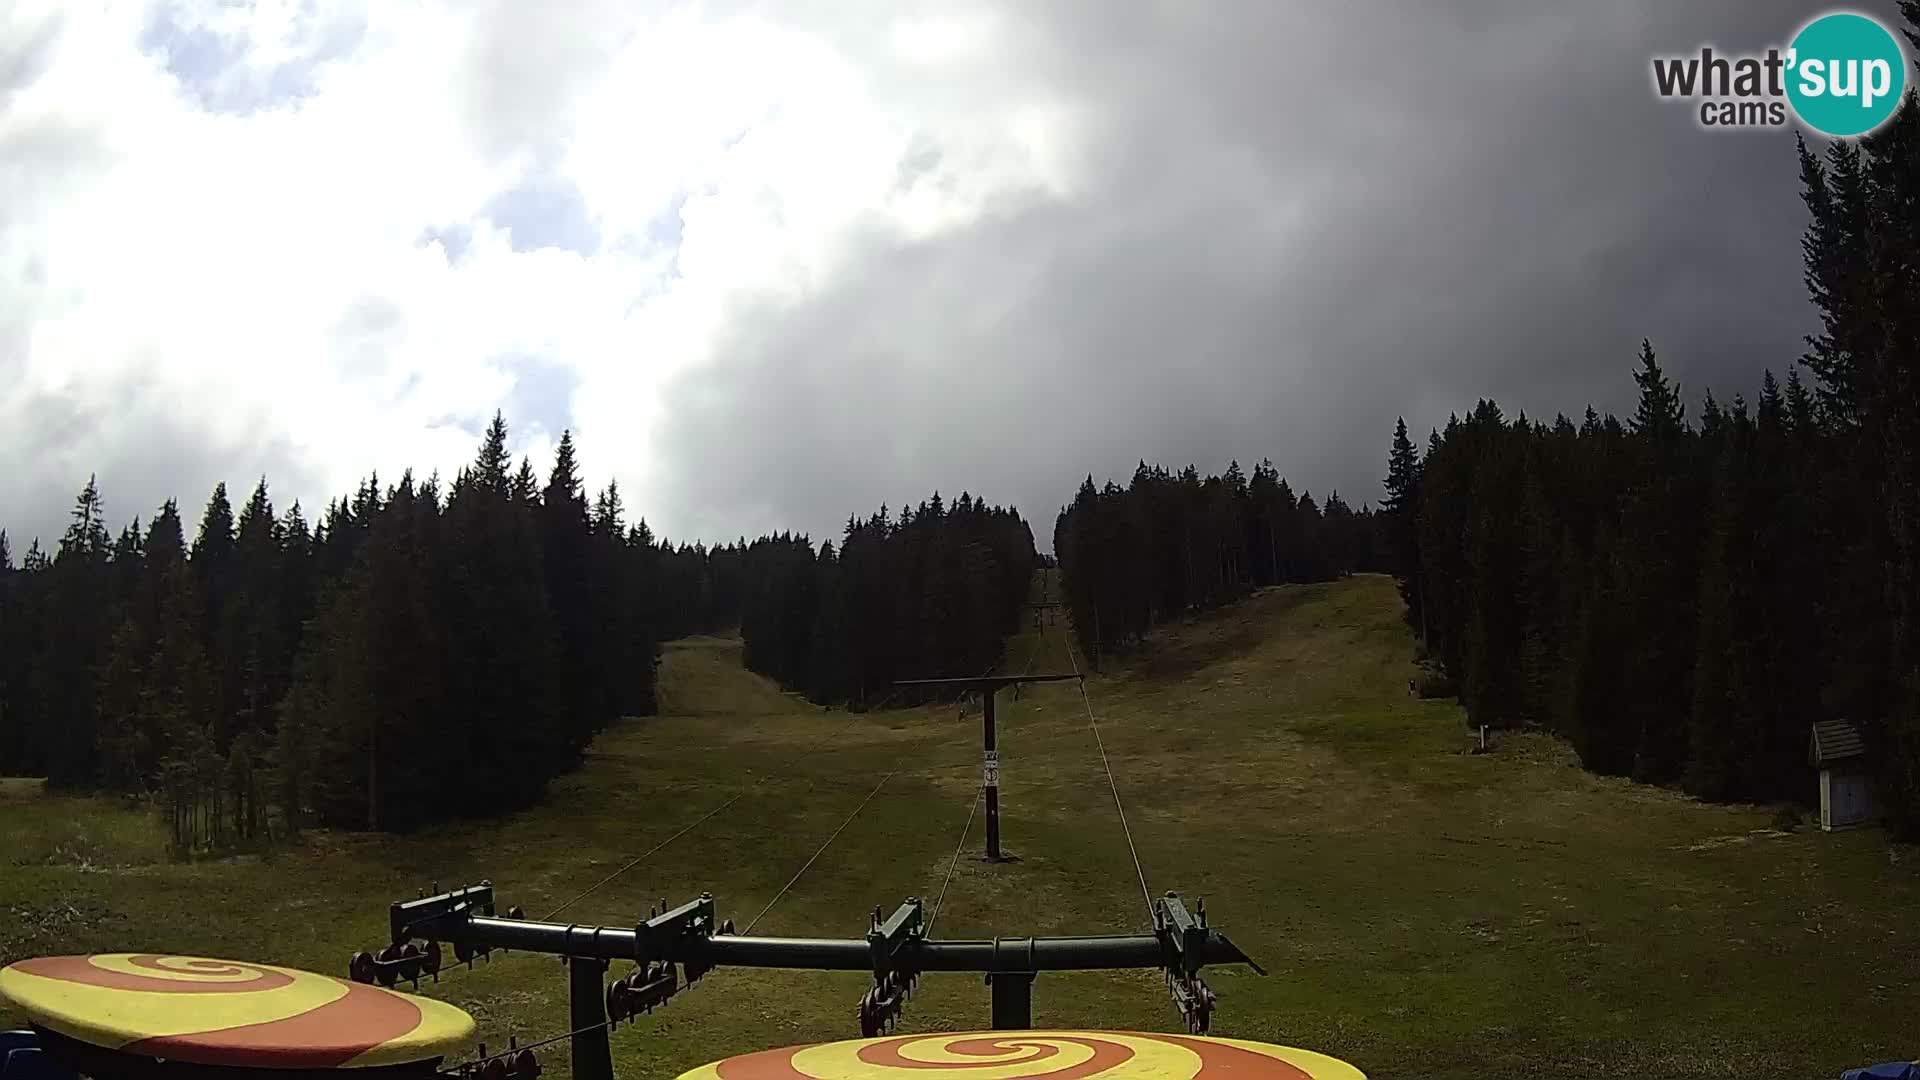 Estación de esquí Rogla Webcam Ostruščica pistas 1 y 2